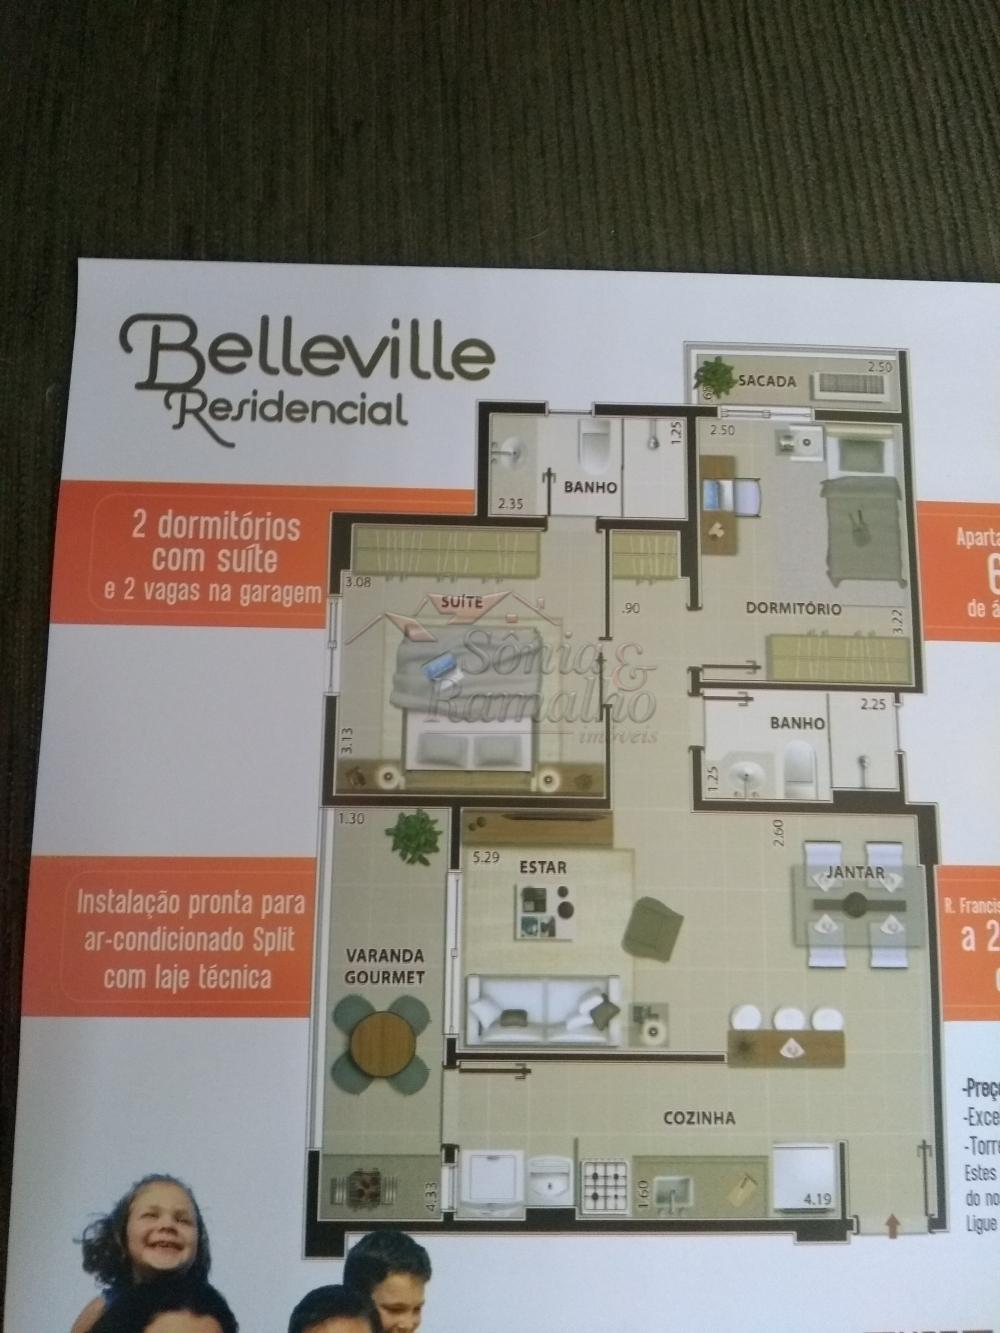 Galeria - Belleville Residencial - Edifico de Apartamentos